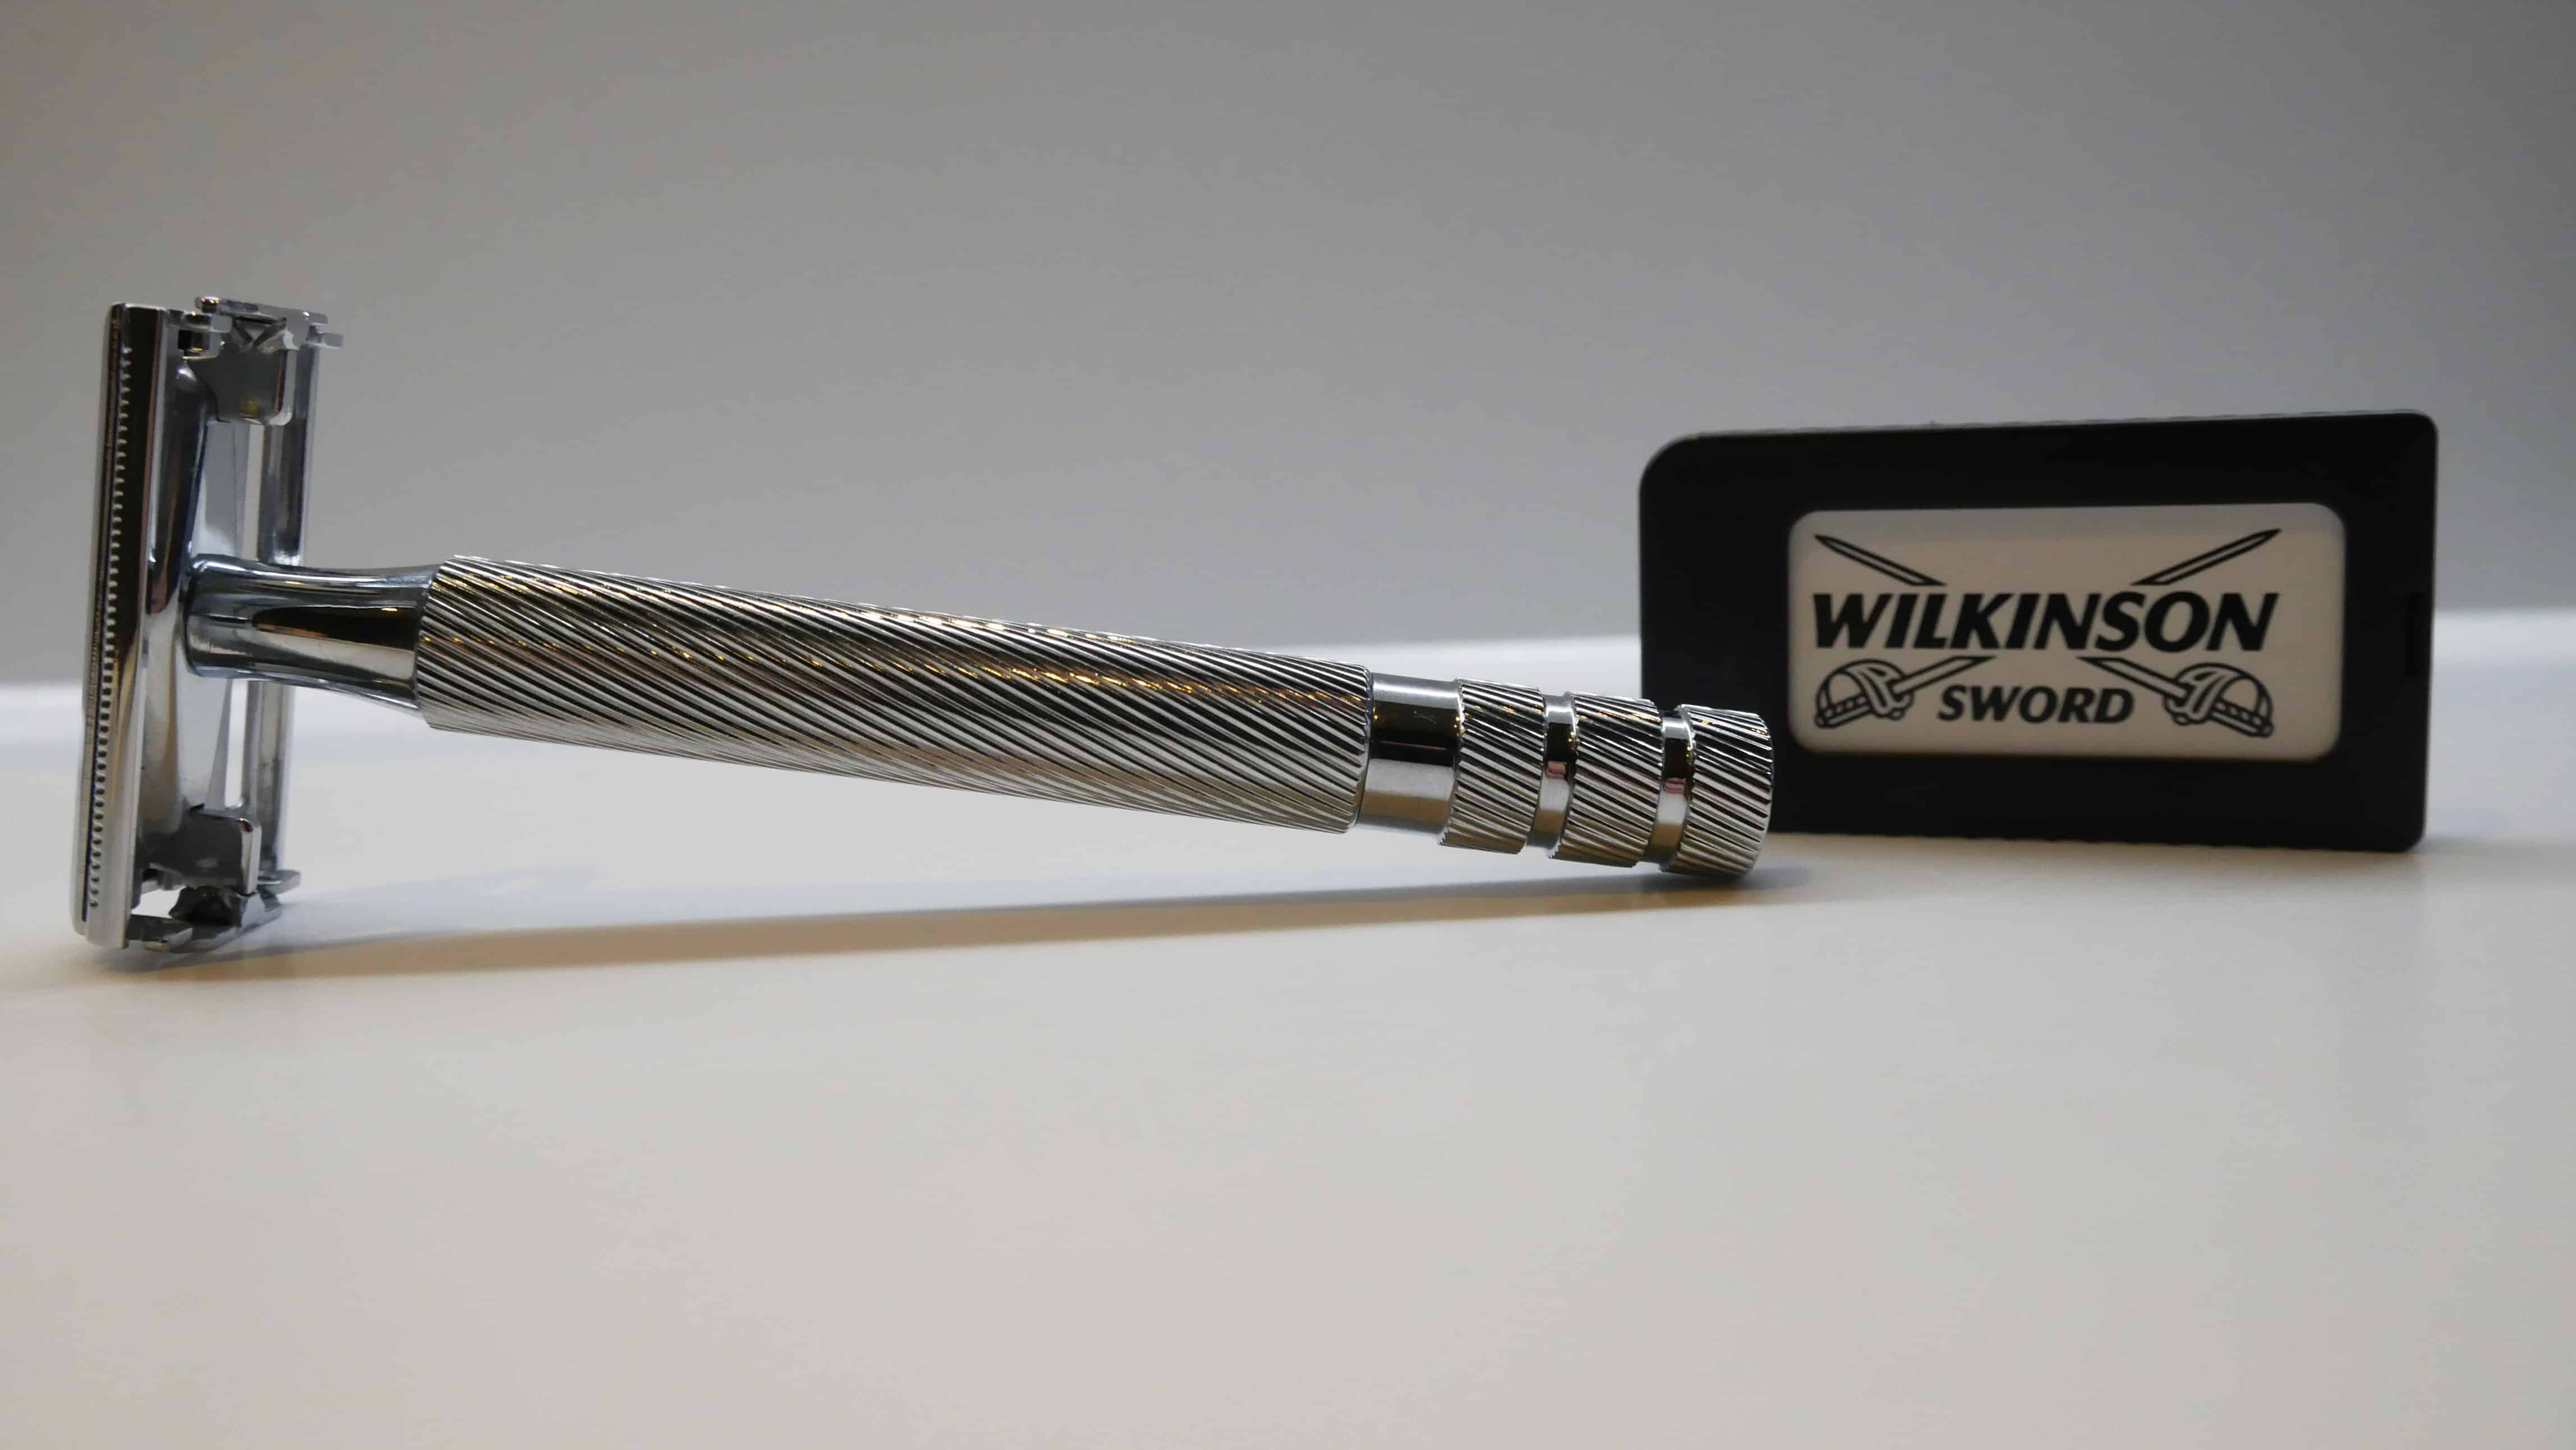 Wilkinson Sword Classic